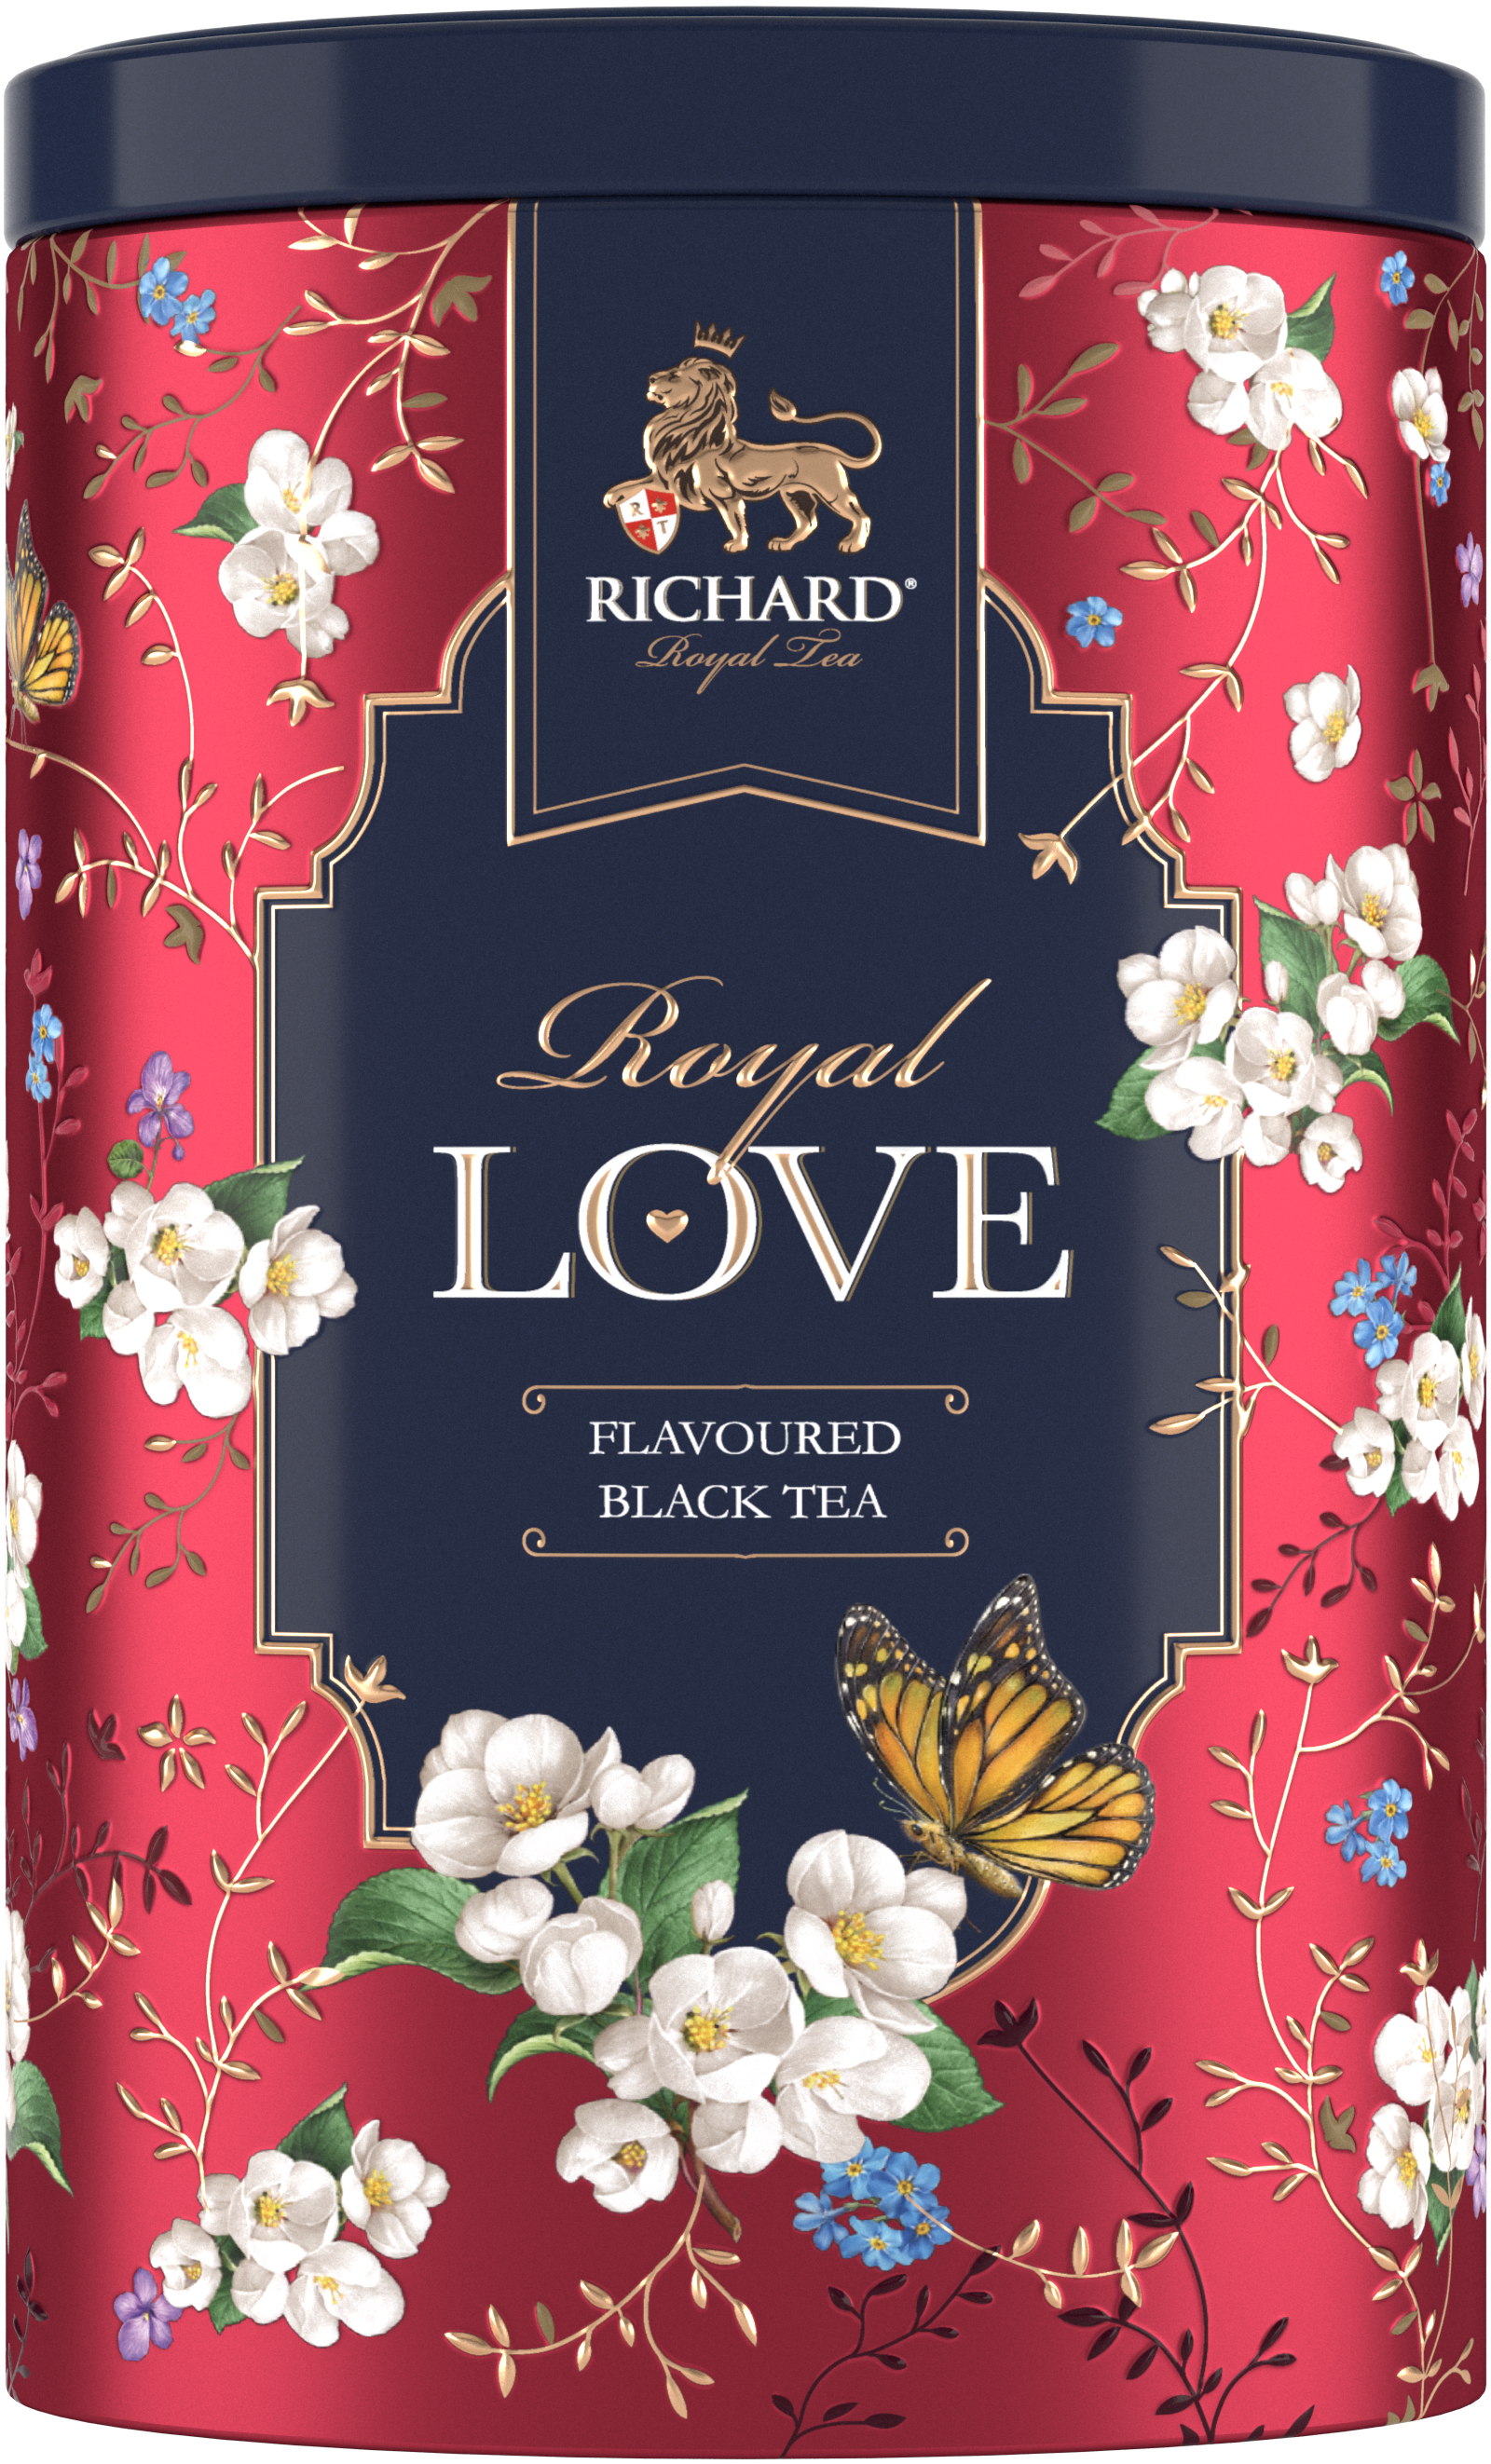 Royal Szerelem ízesített fekete tea, szálas, 80g RED fémdobozban - RichardTeavn - vásároljon a 2990.00 Ft